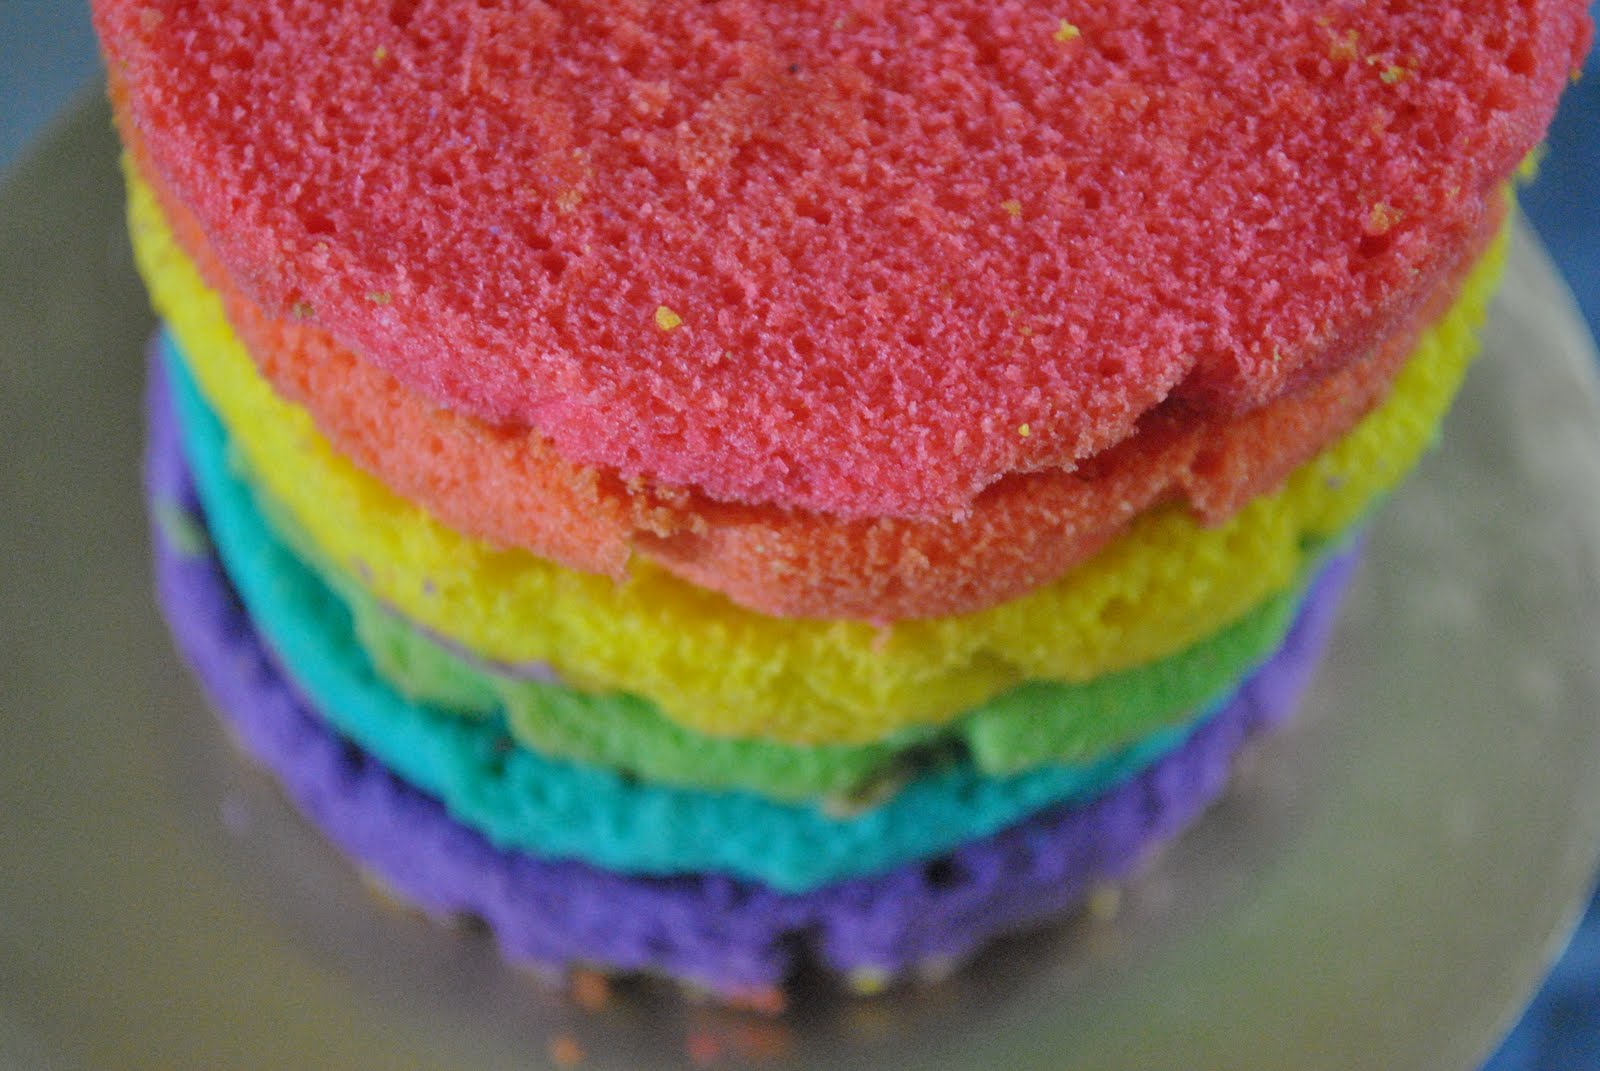 BerJutA wArNa Pelangi Di DalaM HaTi: rainbow cake di bulan 